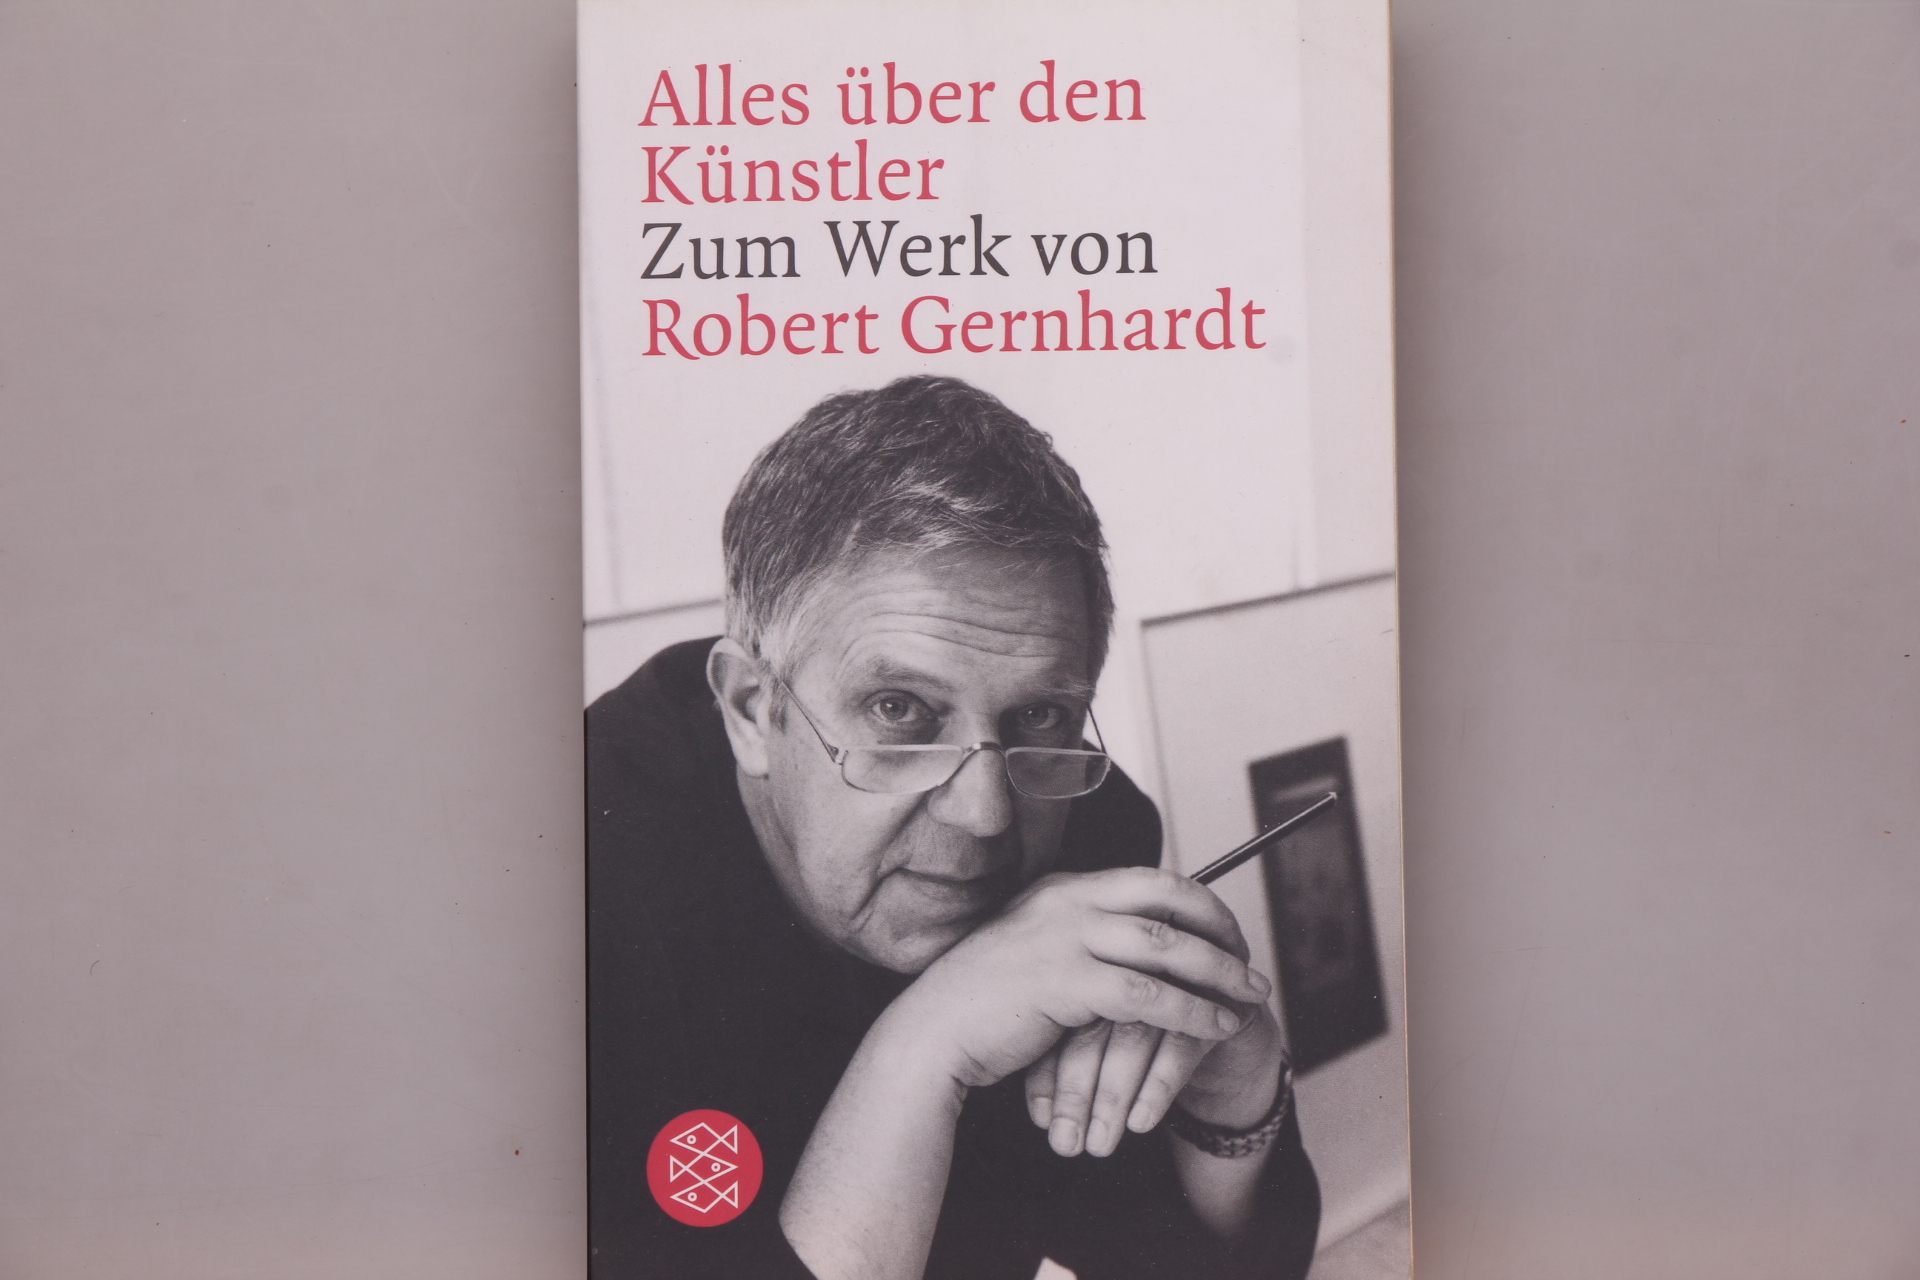 ALLES ÜBER DEN KÜNSTLER. Zum Werk von Robert Gernhardt - [Hrsg.]: Hagestedt, Lutz